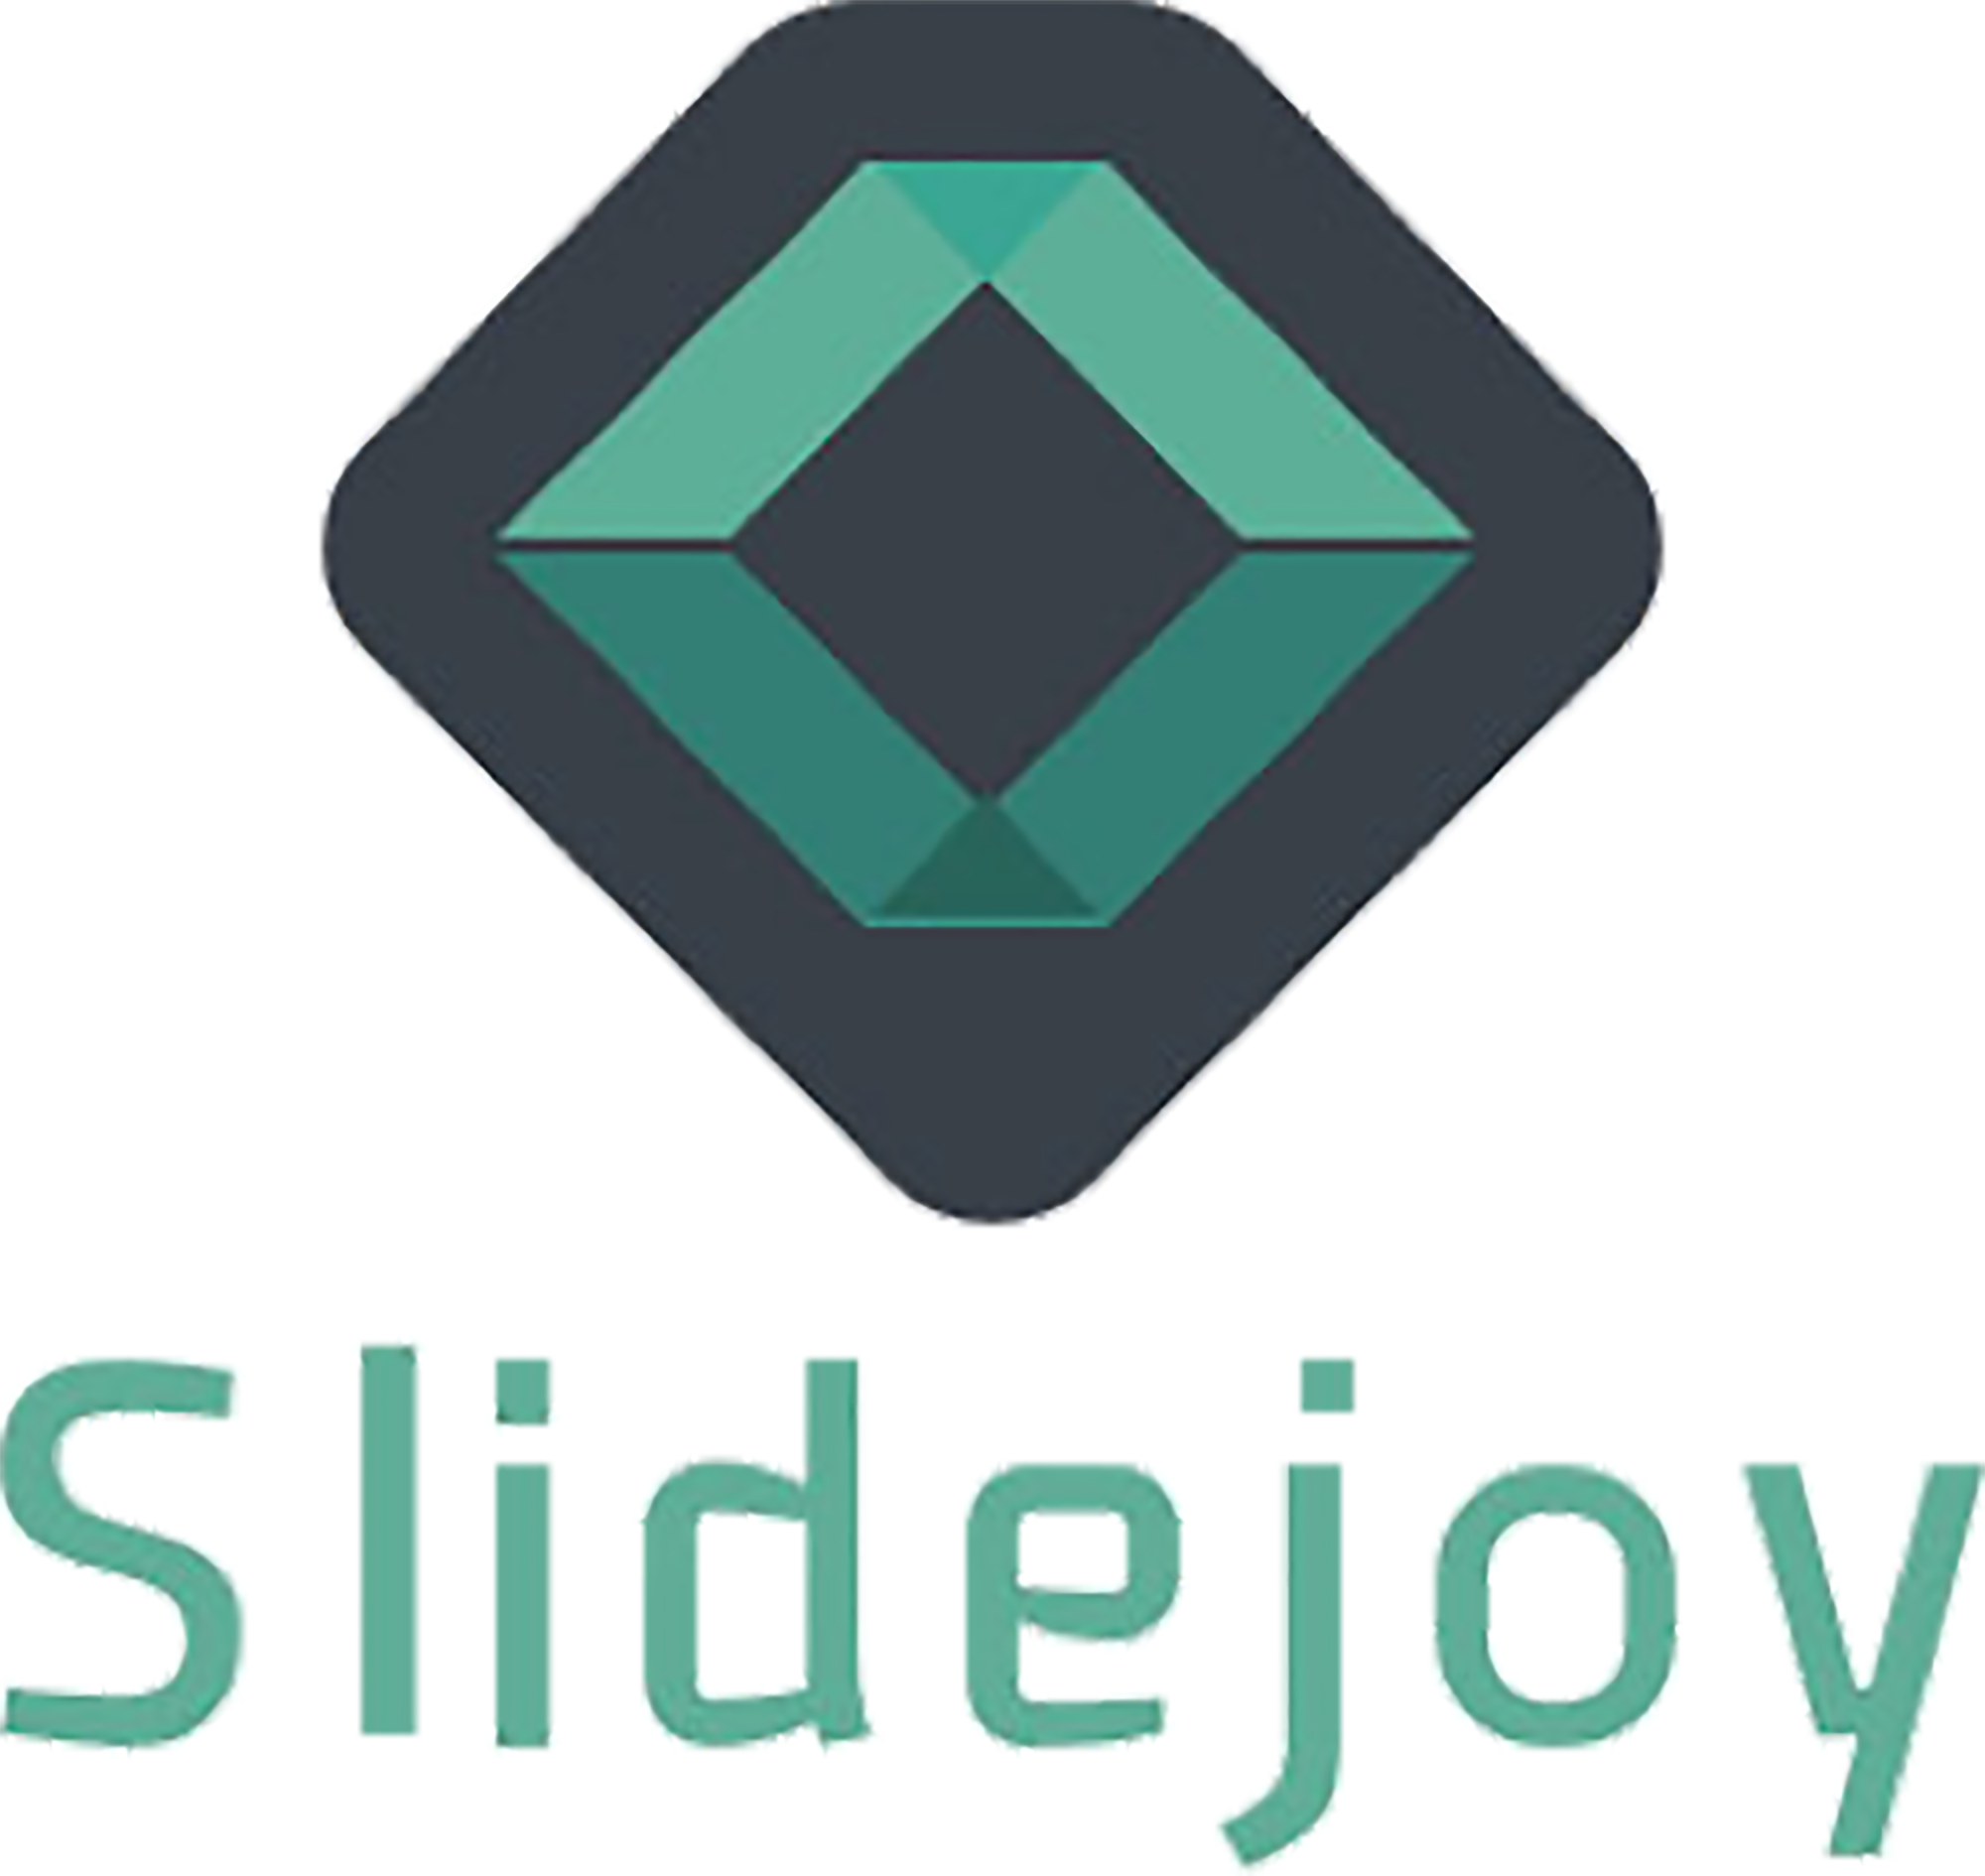 SlideJoy